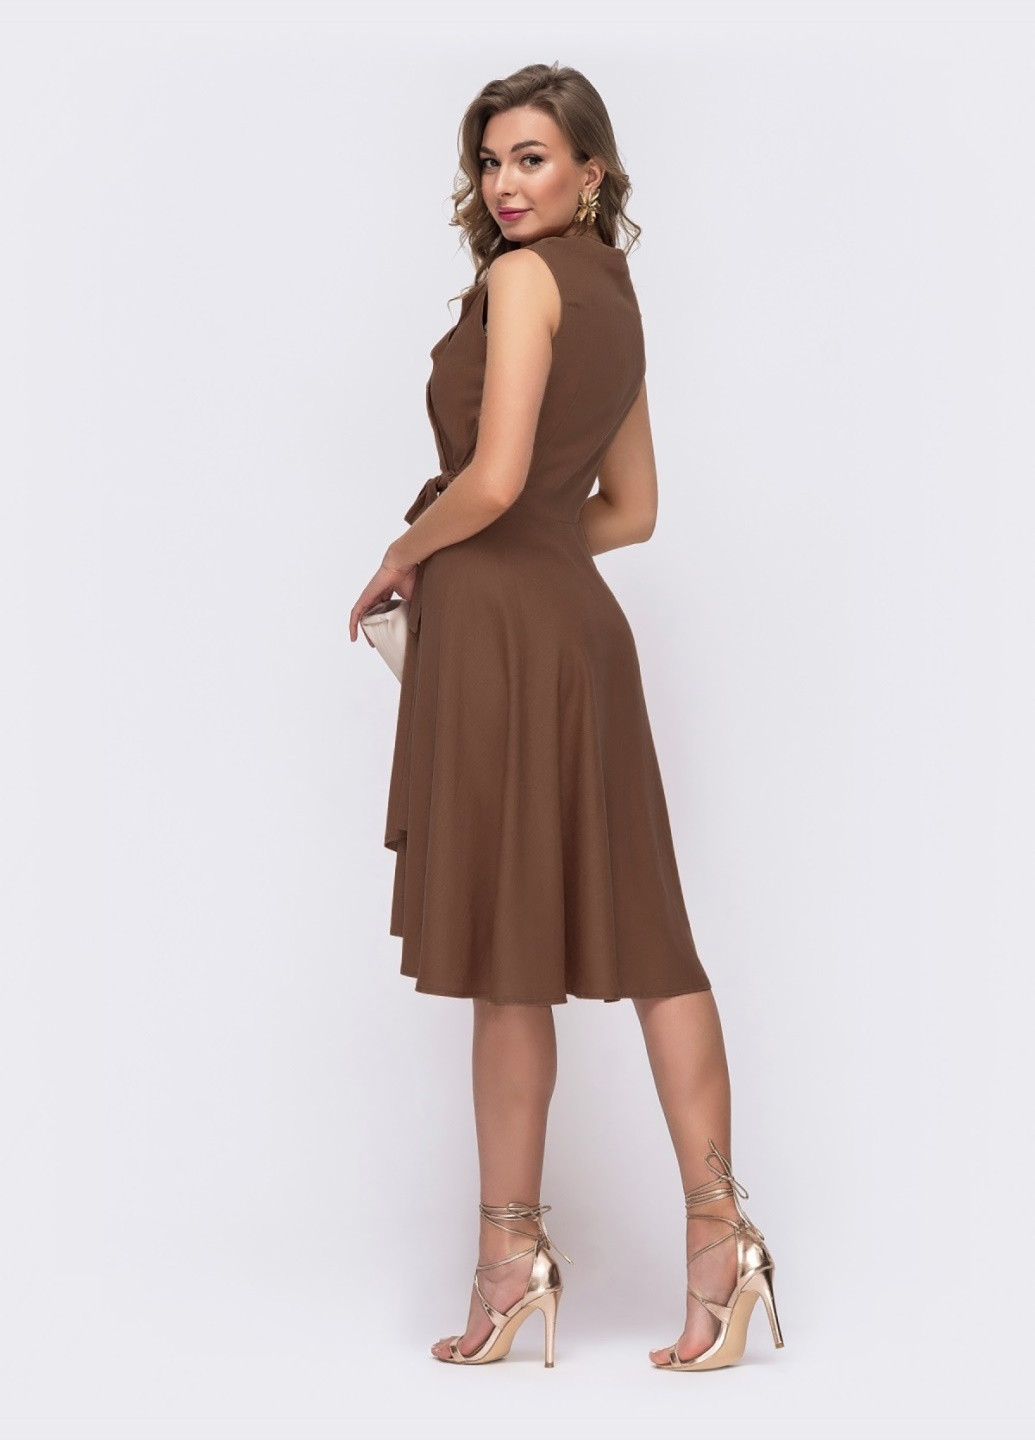 Коричневое платье на запах с удлиненной спинкой коричневое Dressa